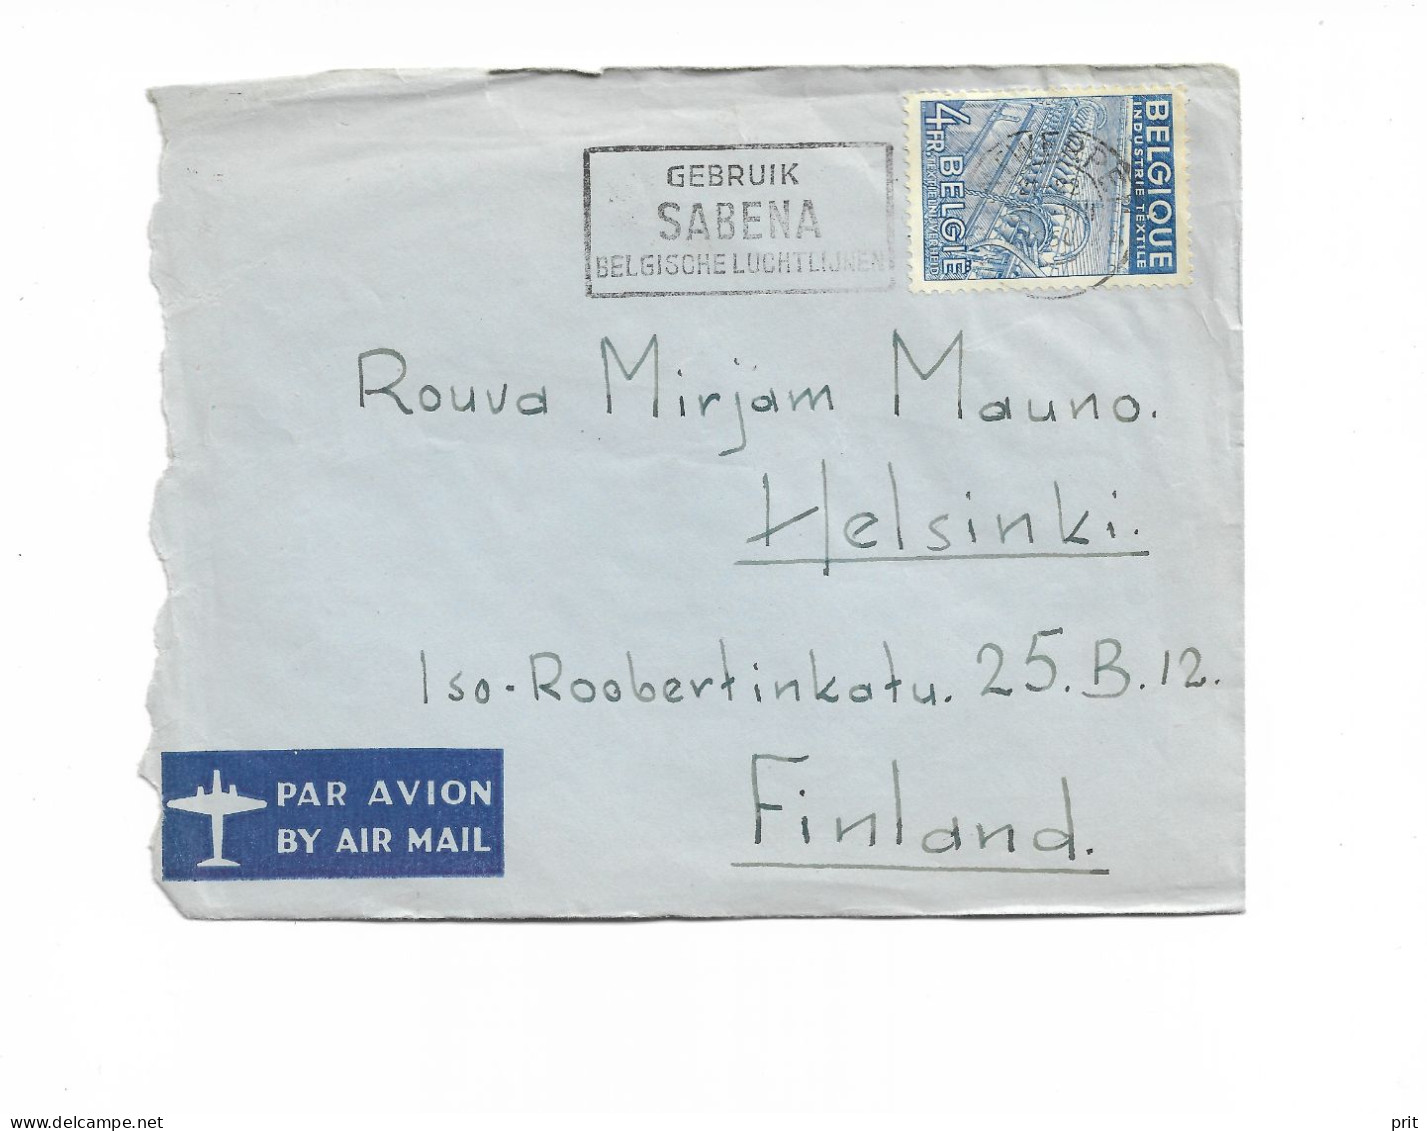 Antwerpen Belgium Airmail Cover To Helsinki Finland 1950 "Gebruik Sabena Belgische Luchtlijnen" Slogan Cancel - Storia Postale